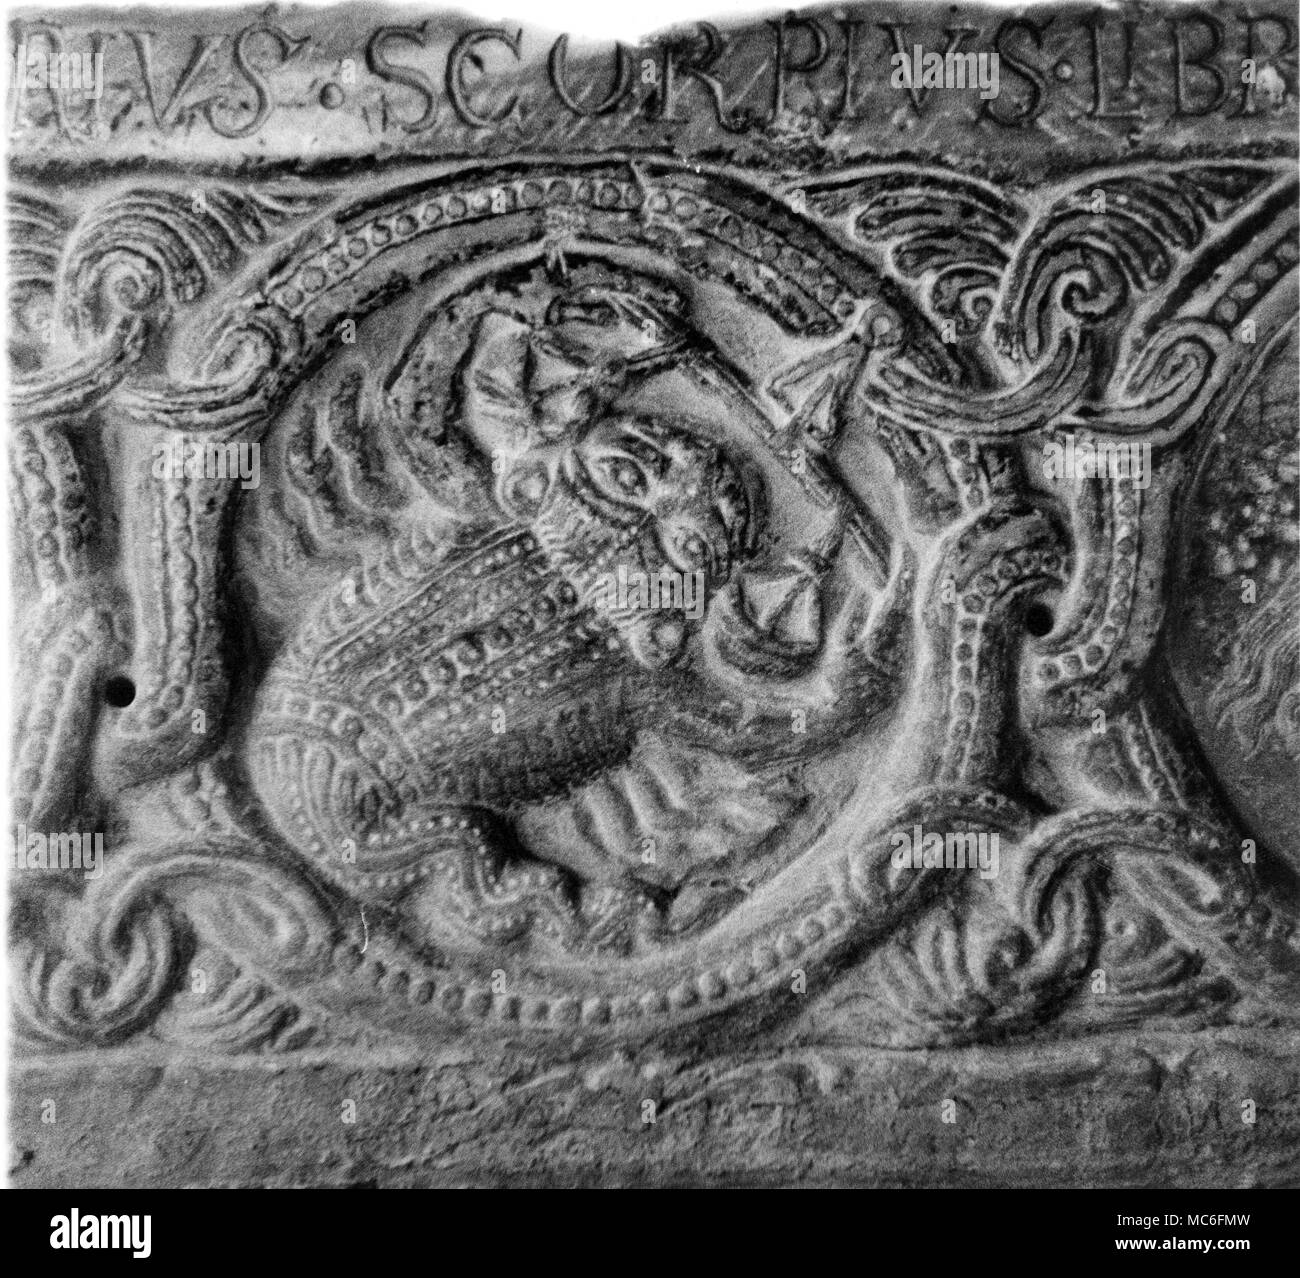 Asrology - Scorpius - von der so genannten "Tierkreiszeichen arch' im Kloster Sacra di San Michele, Val di Susa, 12. Jahrhundert Stockfoto